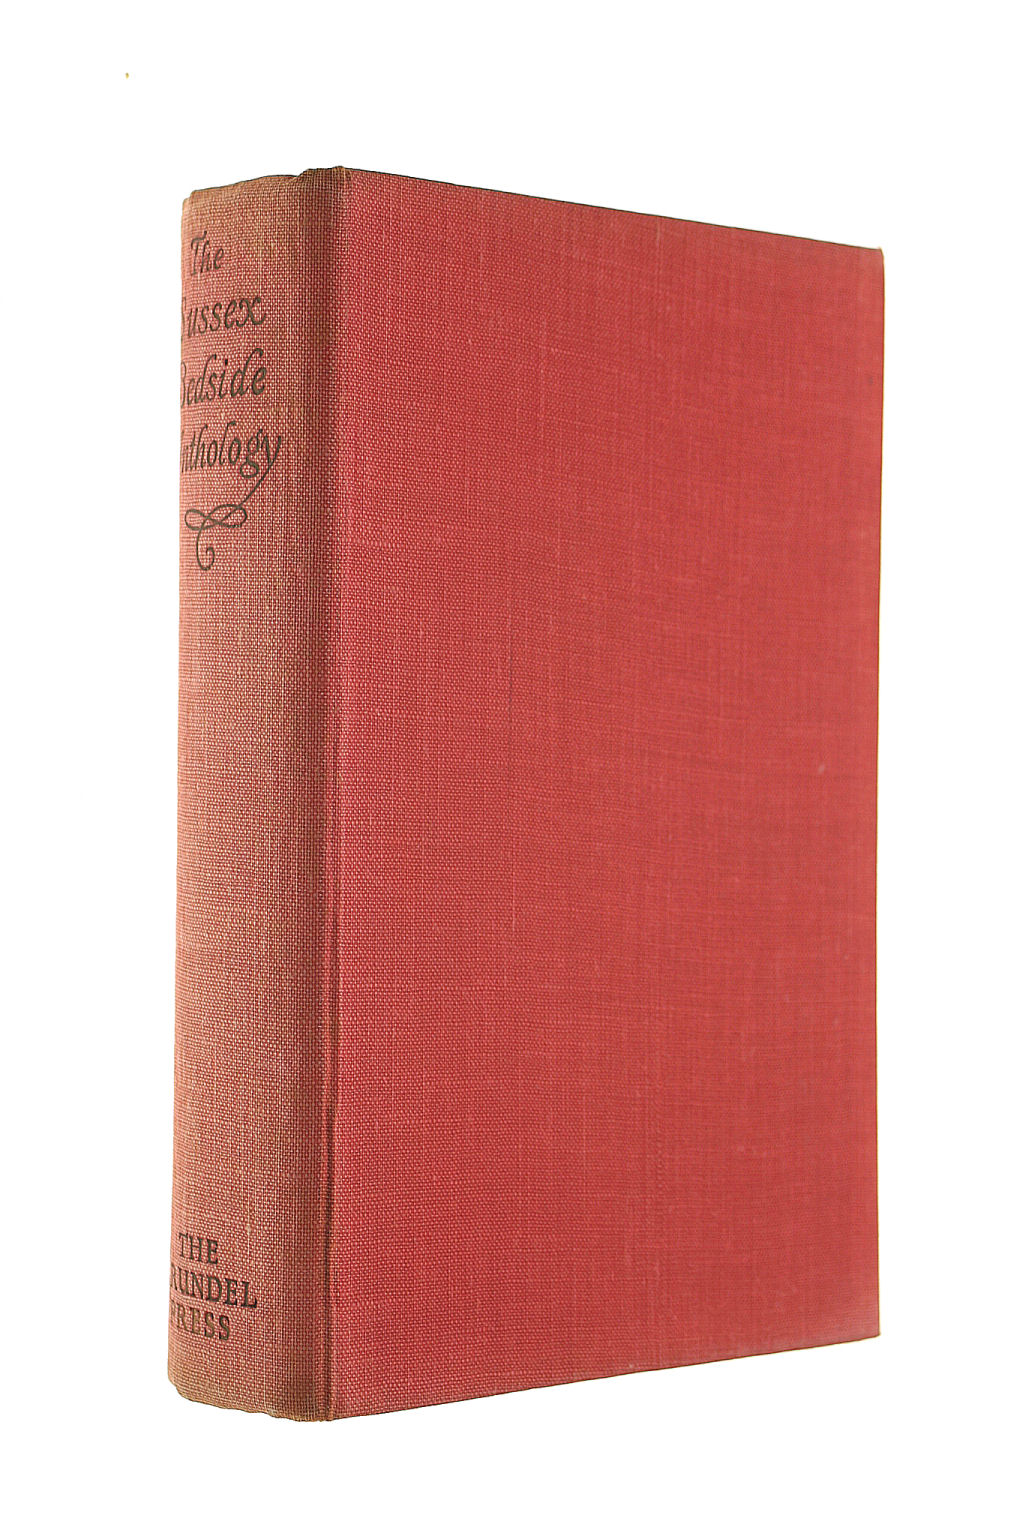 FRANCIS, MERVYN D. - The Sussex Bedside Anthology